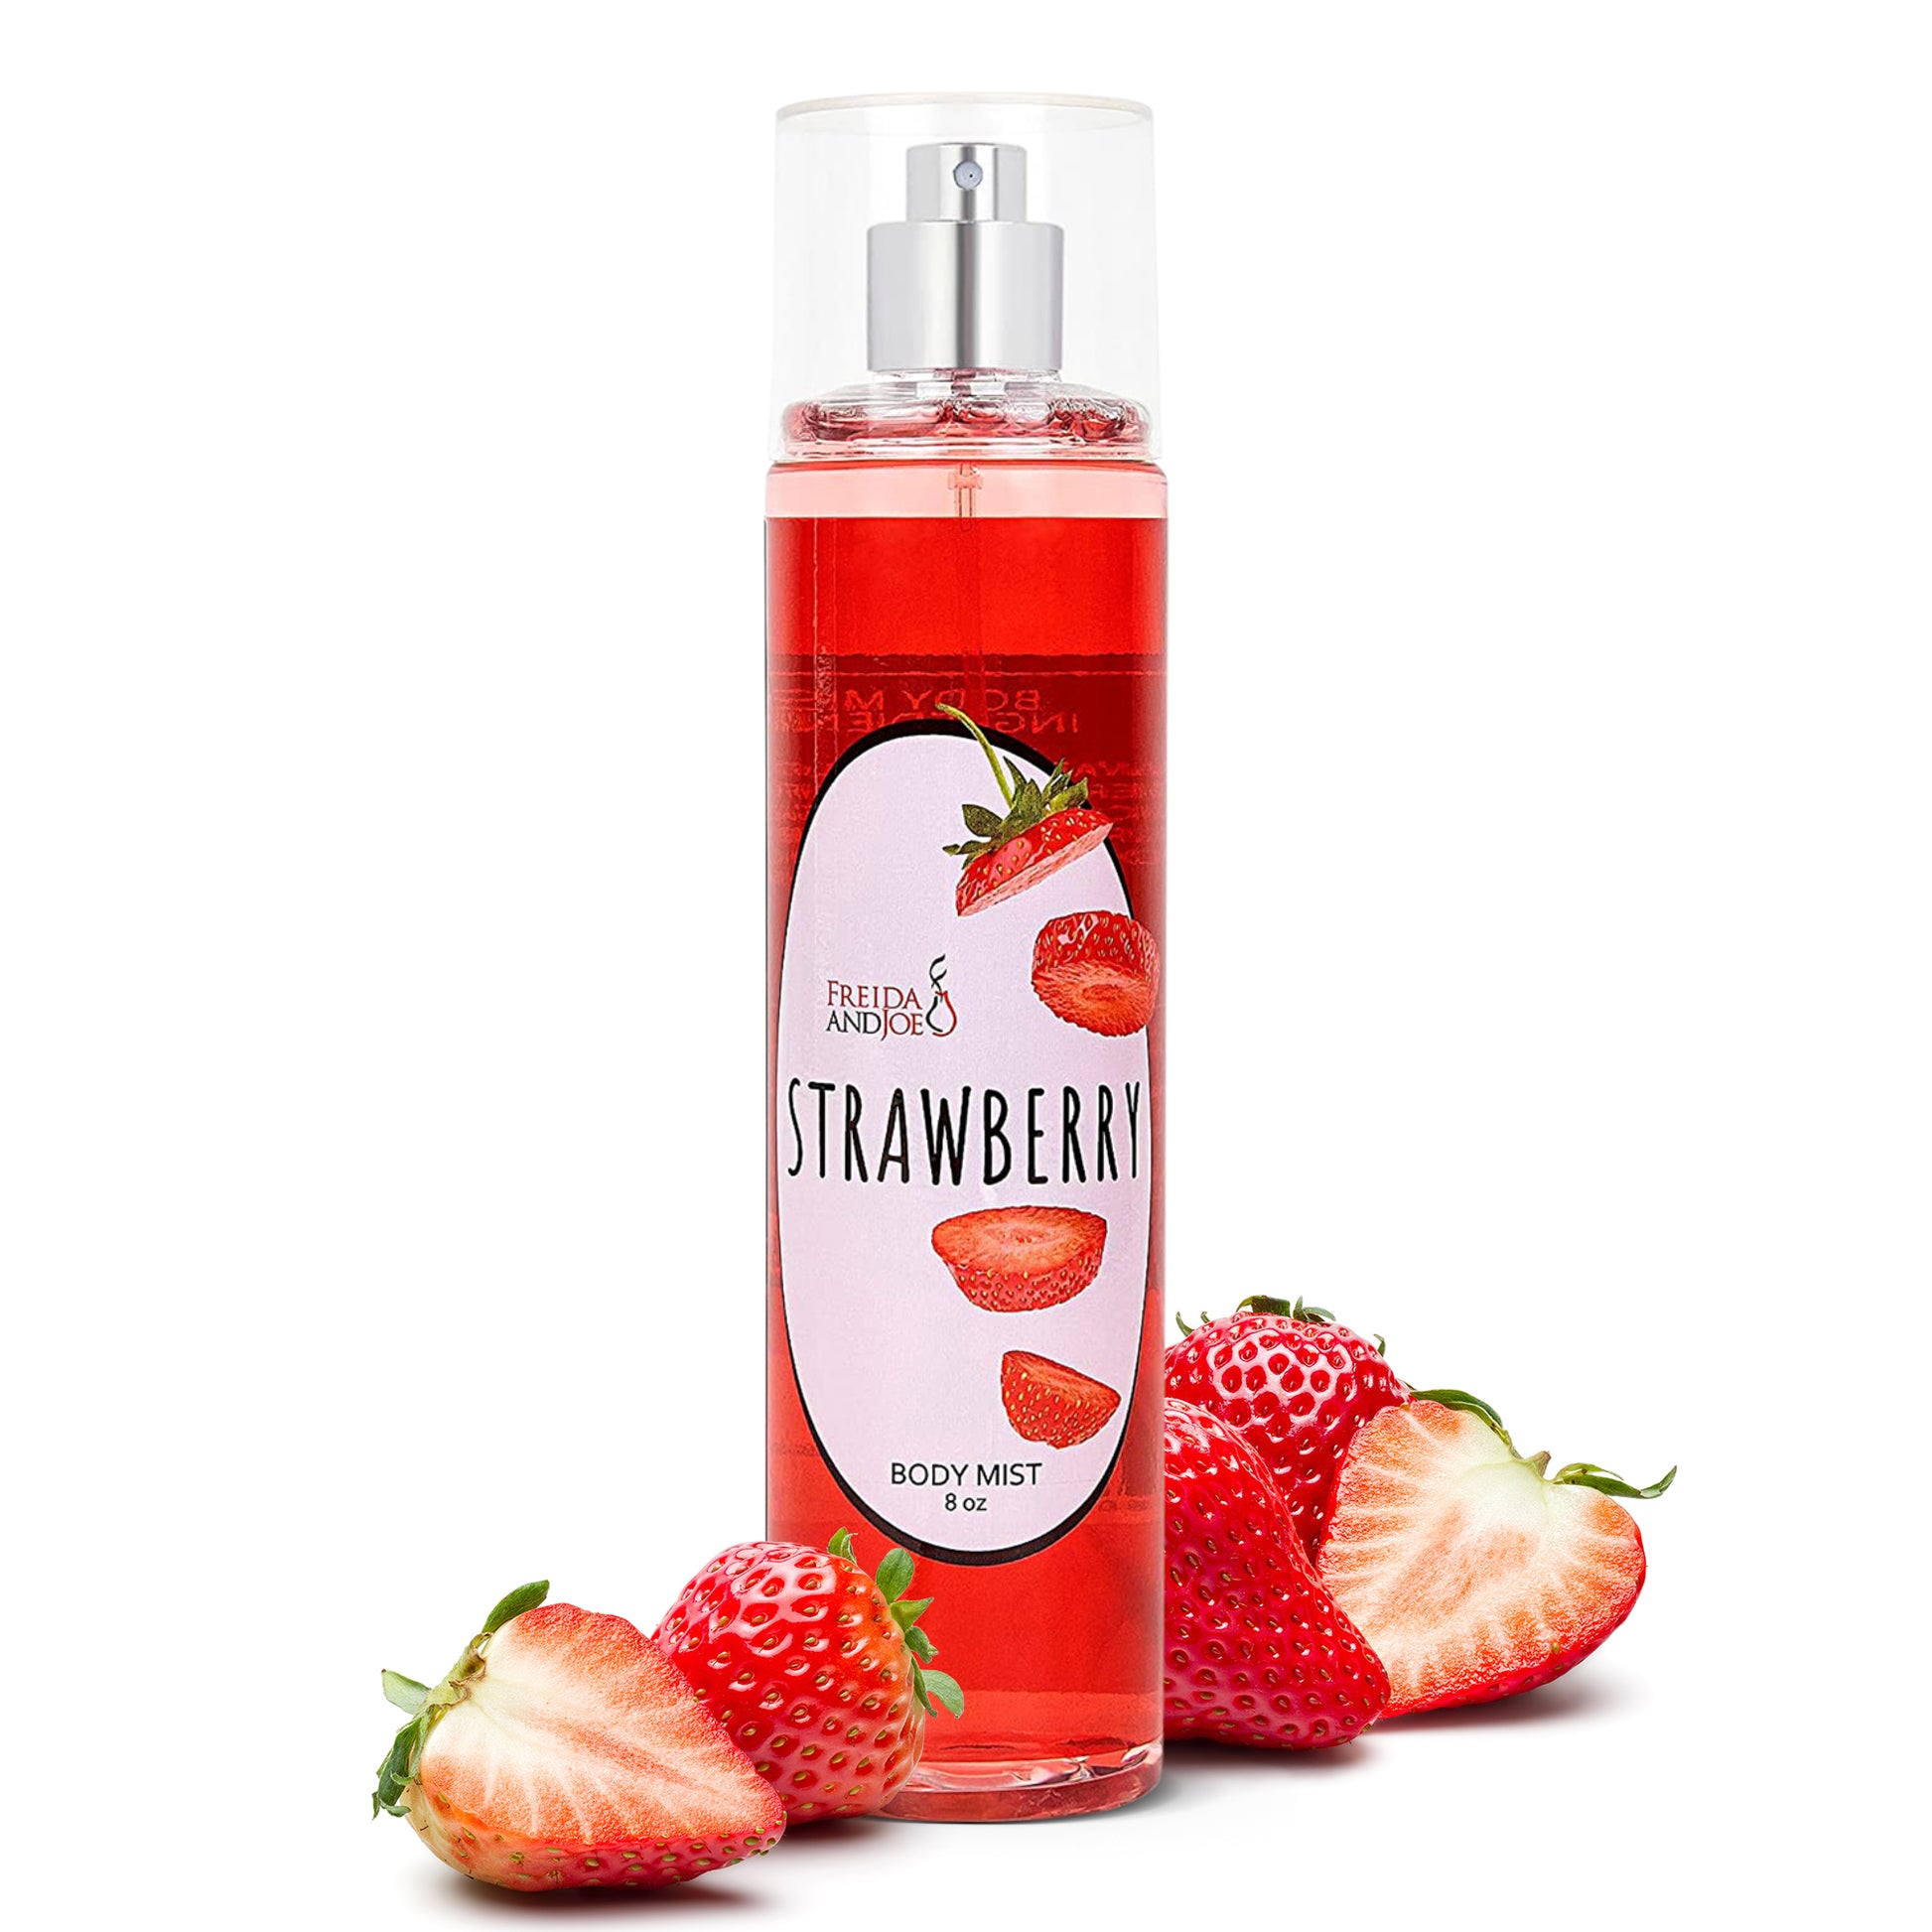 Strawberry Shortcake Body Oil, Gift for Her,Body Oil